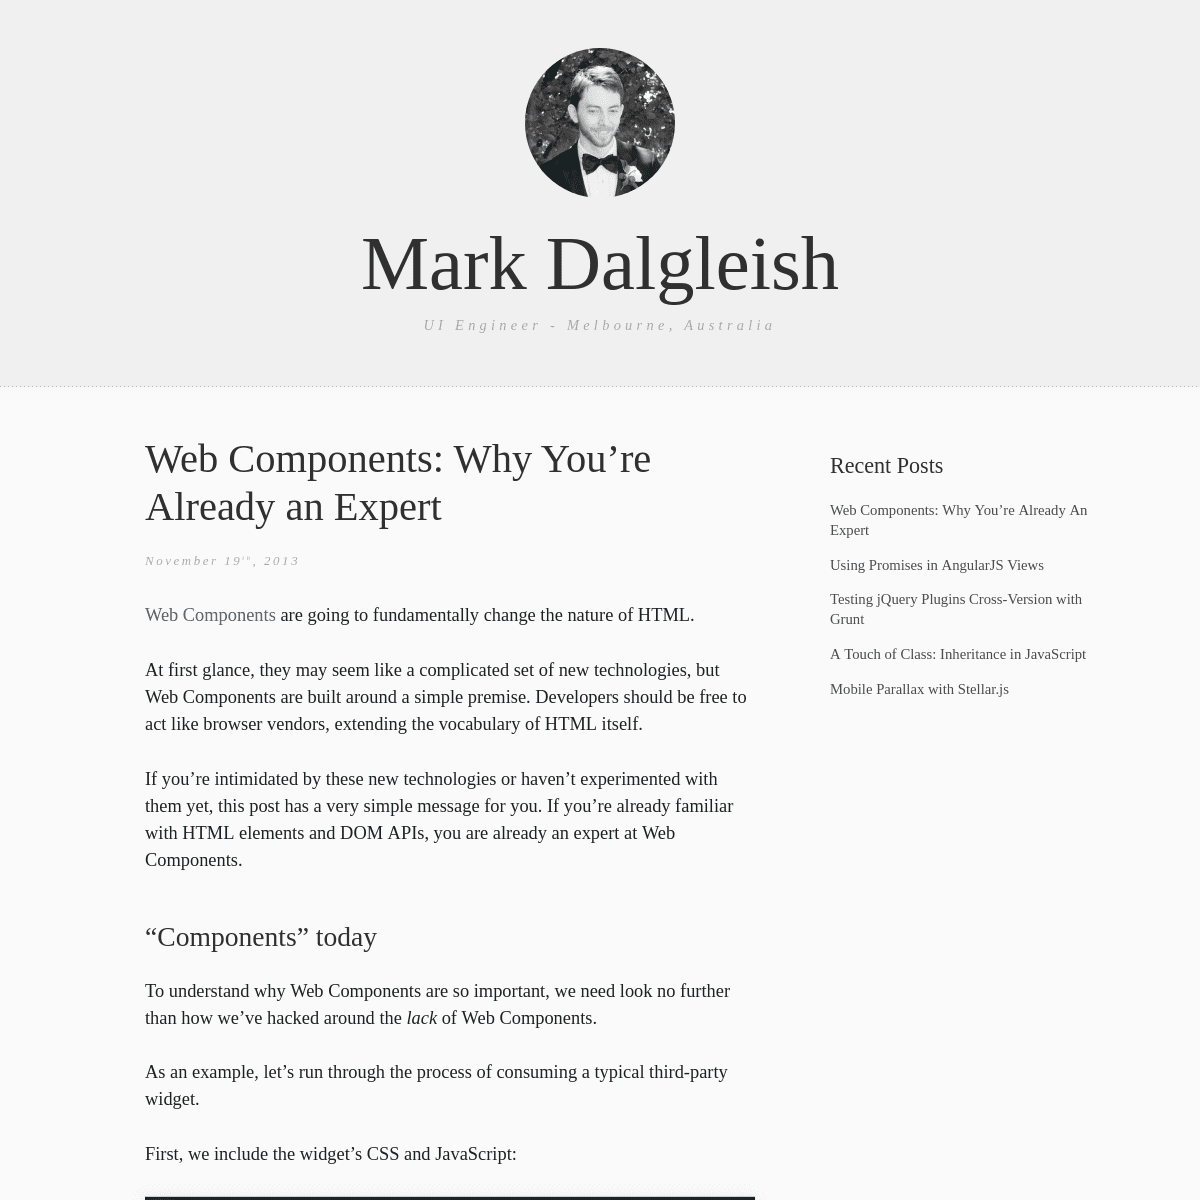 A complete backup of markdalgleish.com